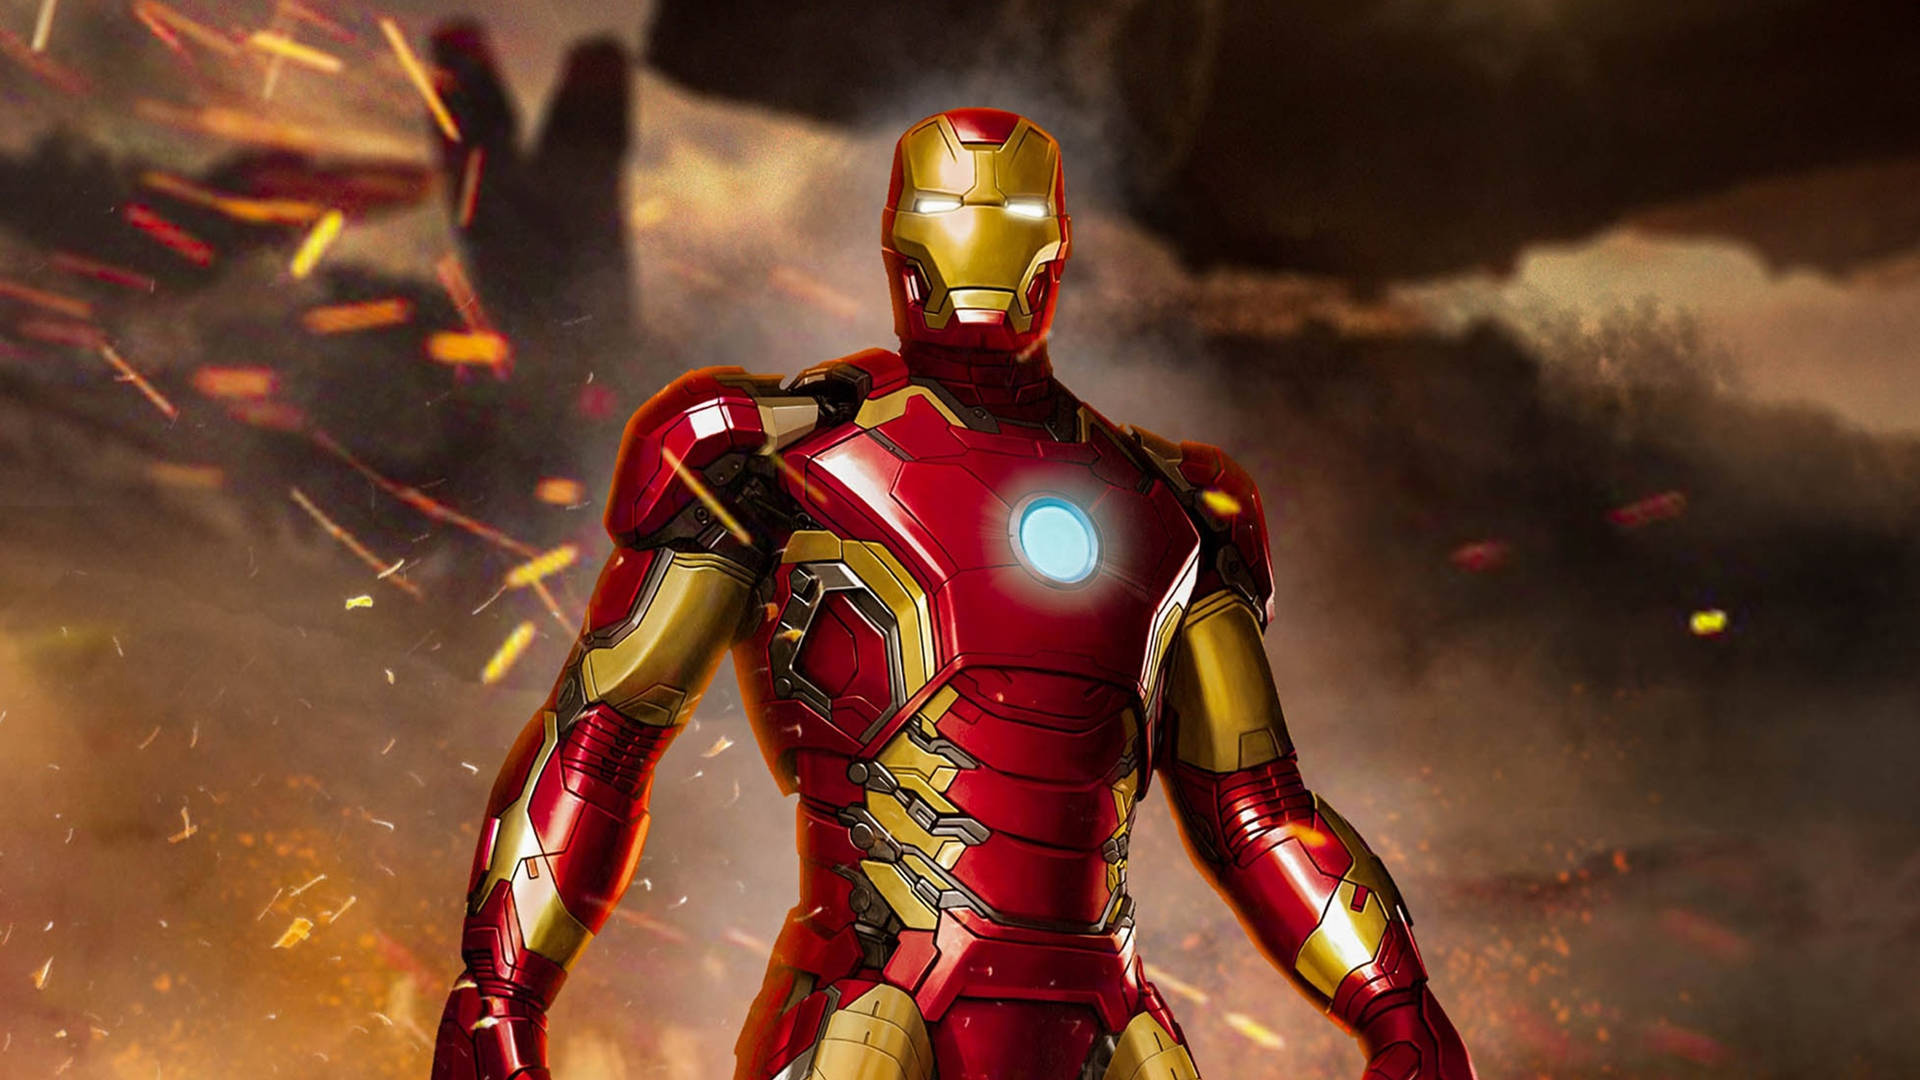 Flaming Ashes Iron Man Superhero Wallpaper